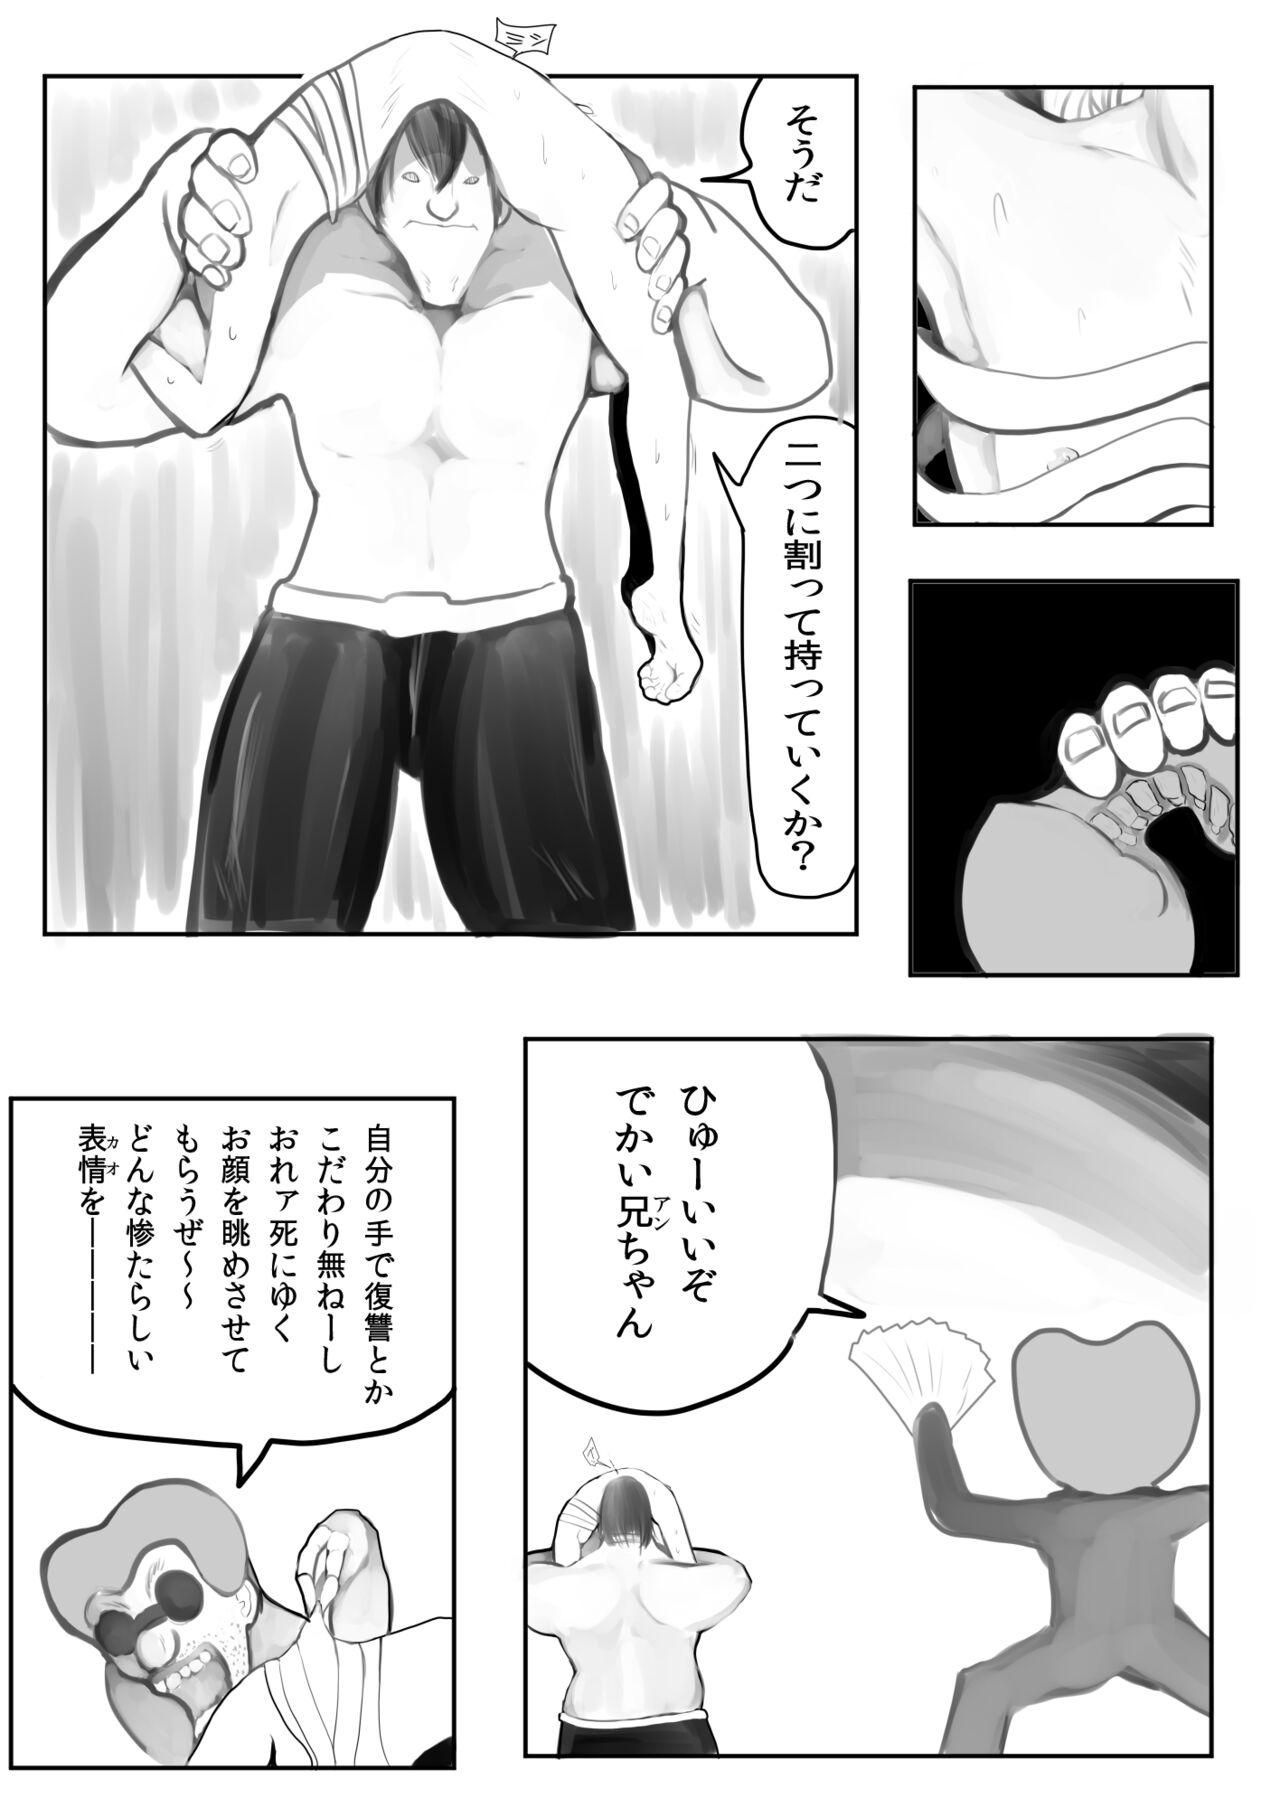 Otokonoko Manga 25